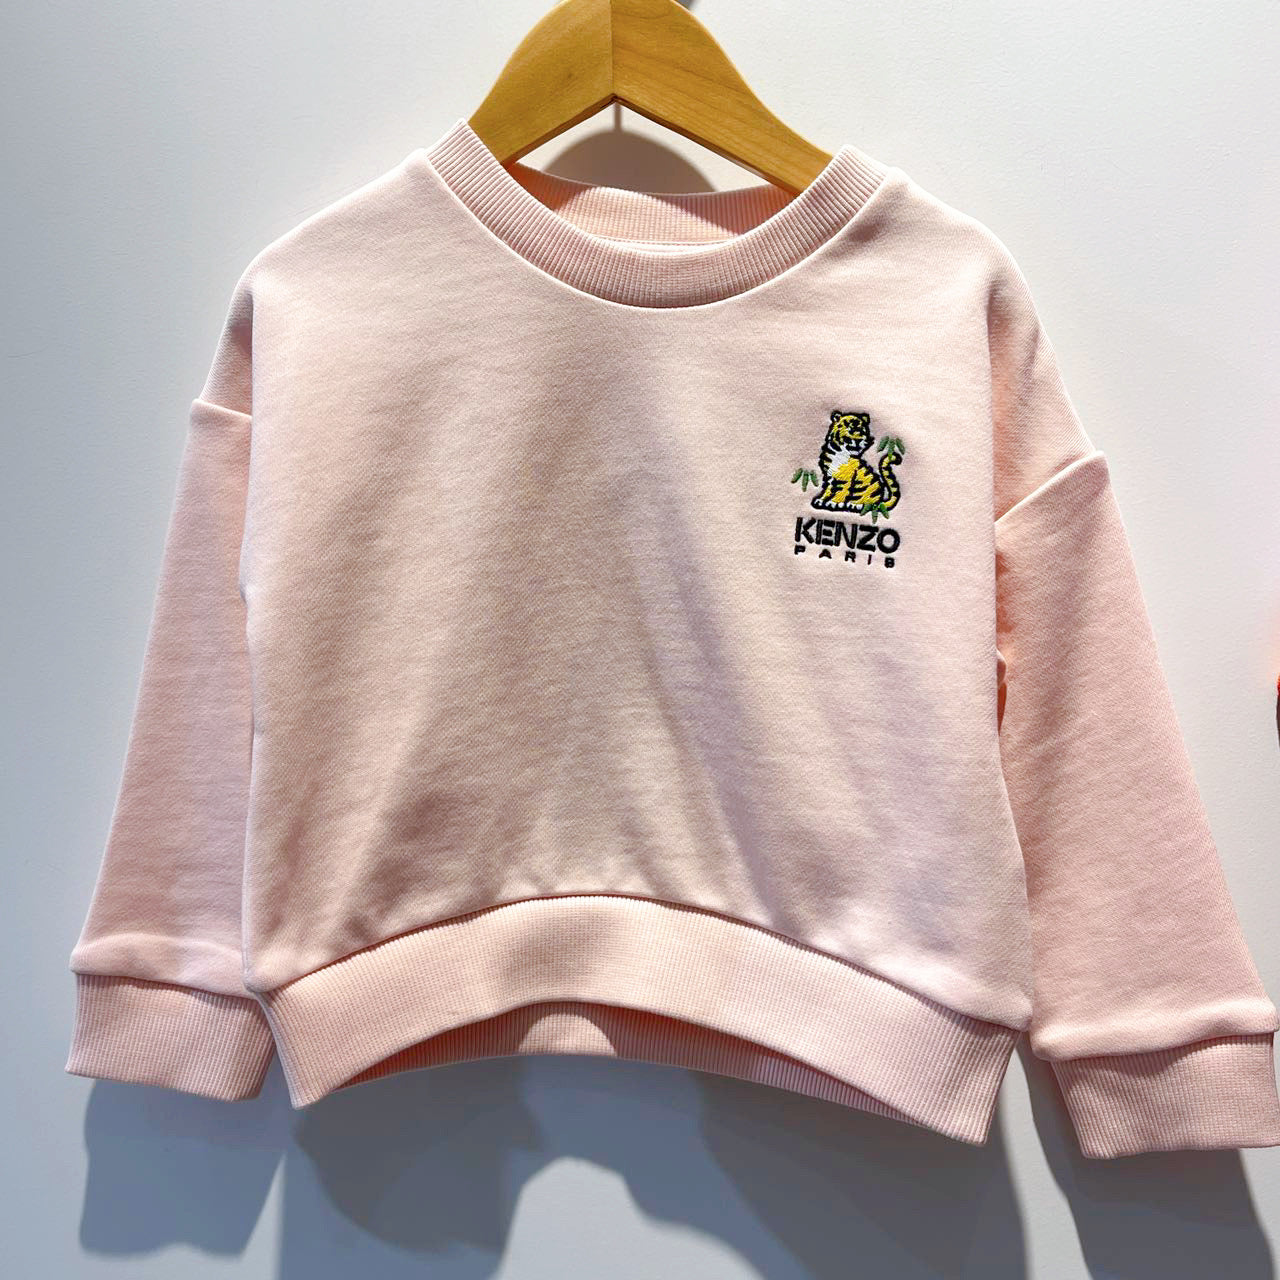 Kenzo Girls Pink Sweatshirt